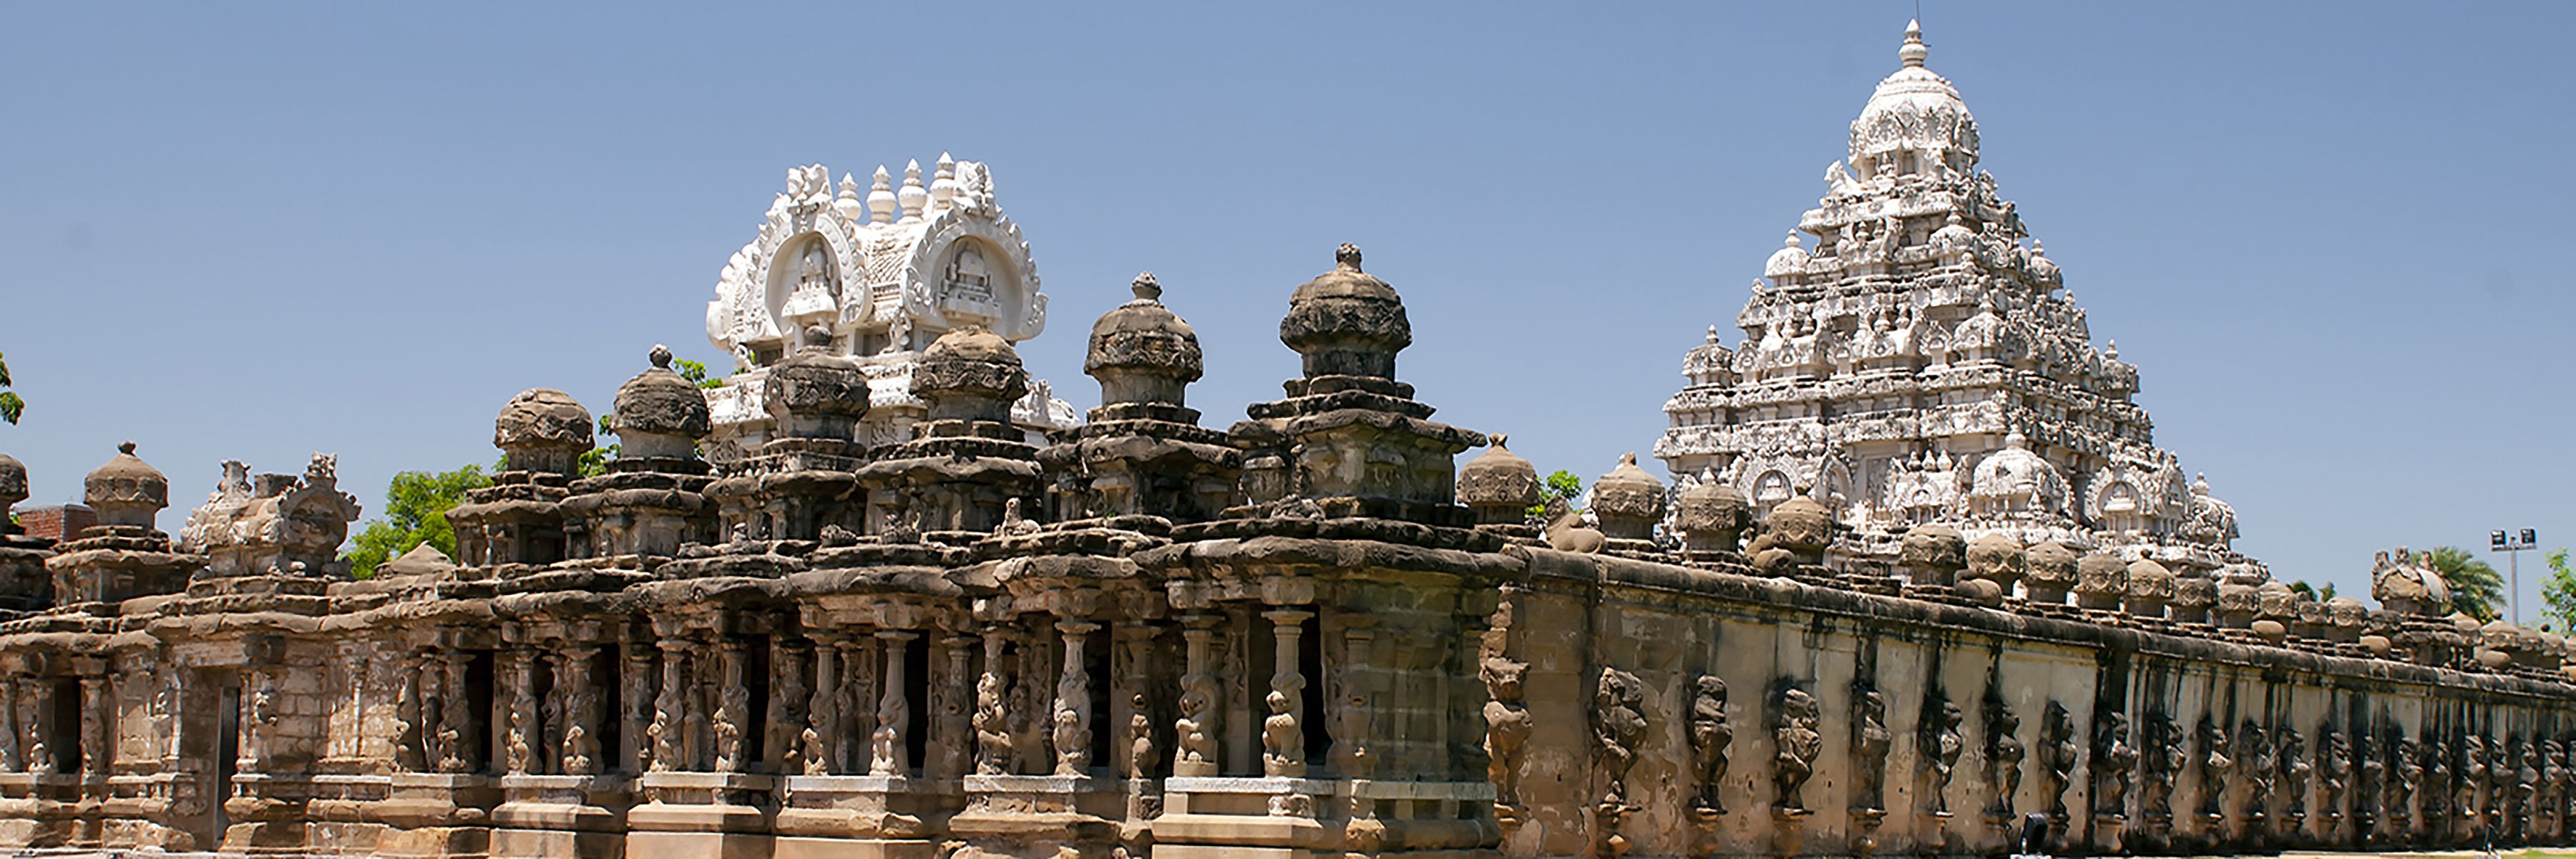 Kailasanathar Tempel in Kanchipuram